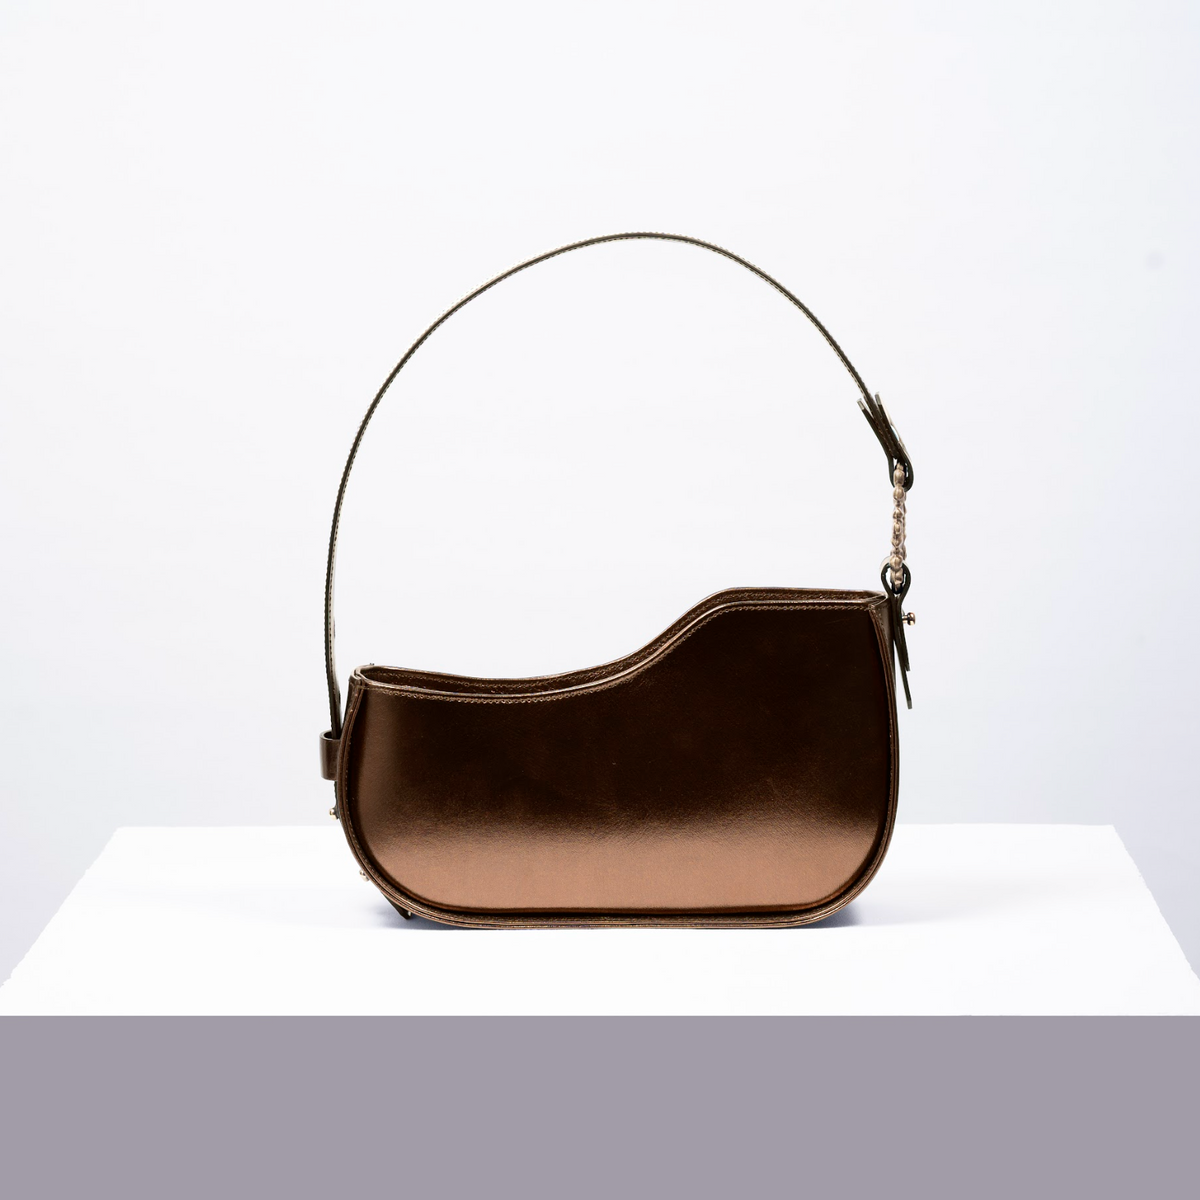 ONDA Shoulder Leather Bag
- Bronze